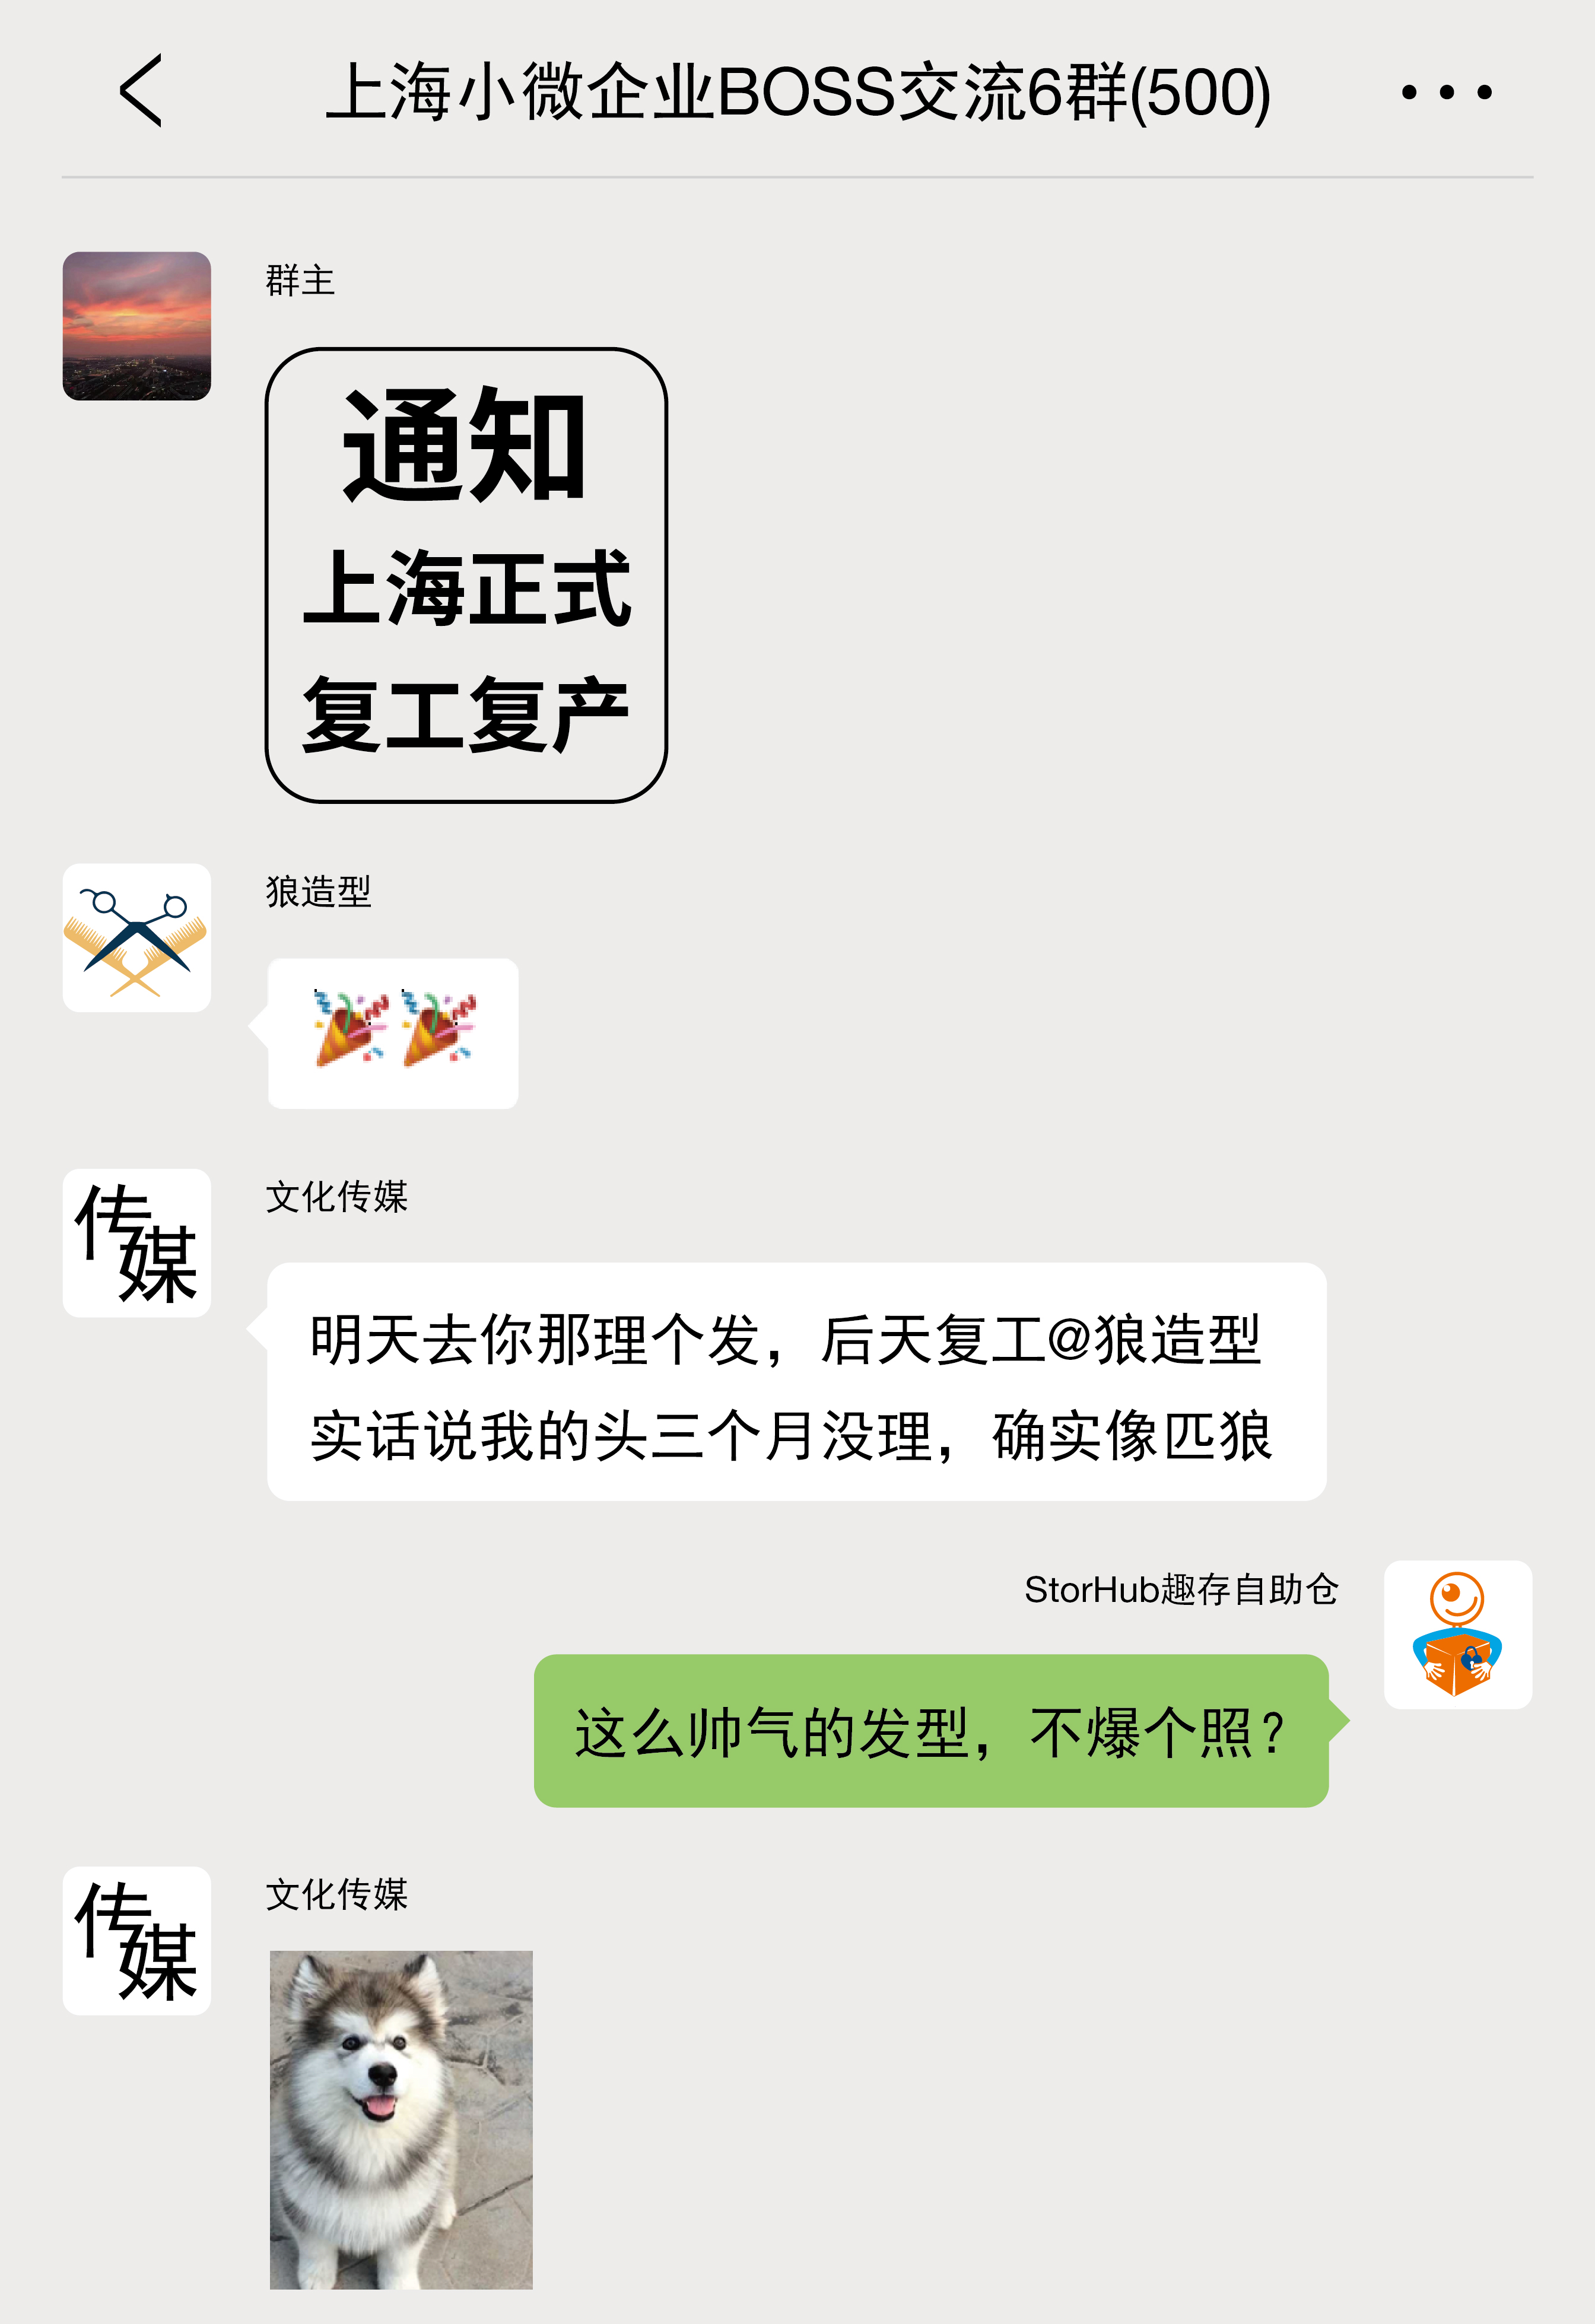 上海微小企业BOSS交流群_画板 1.jpg